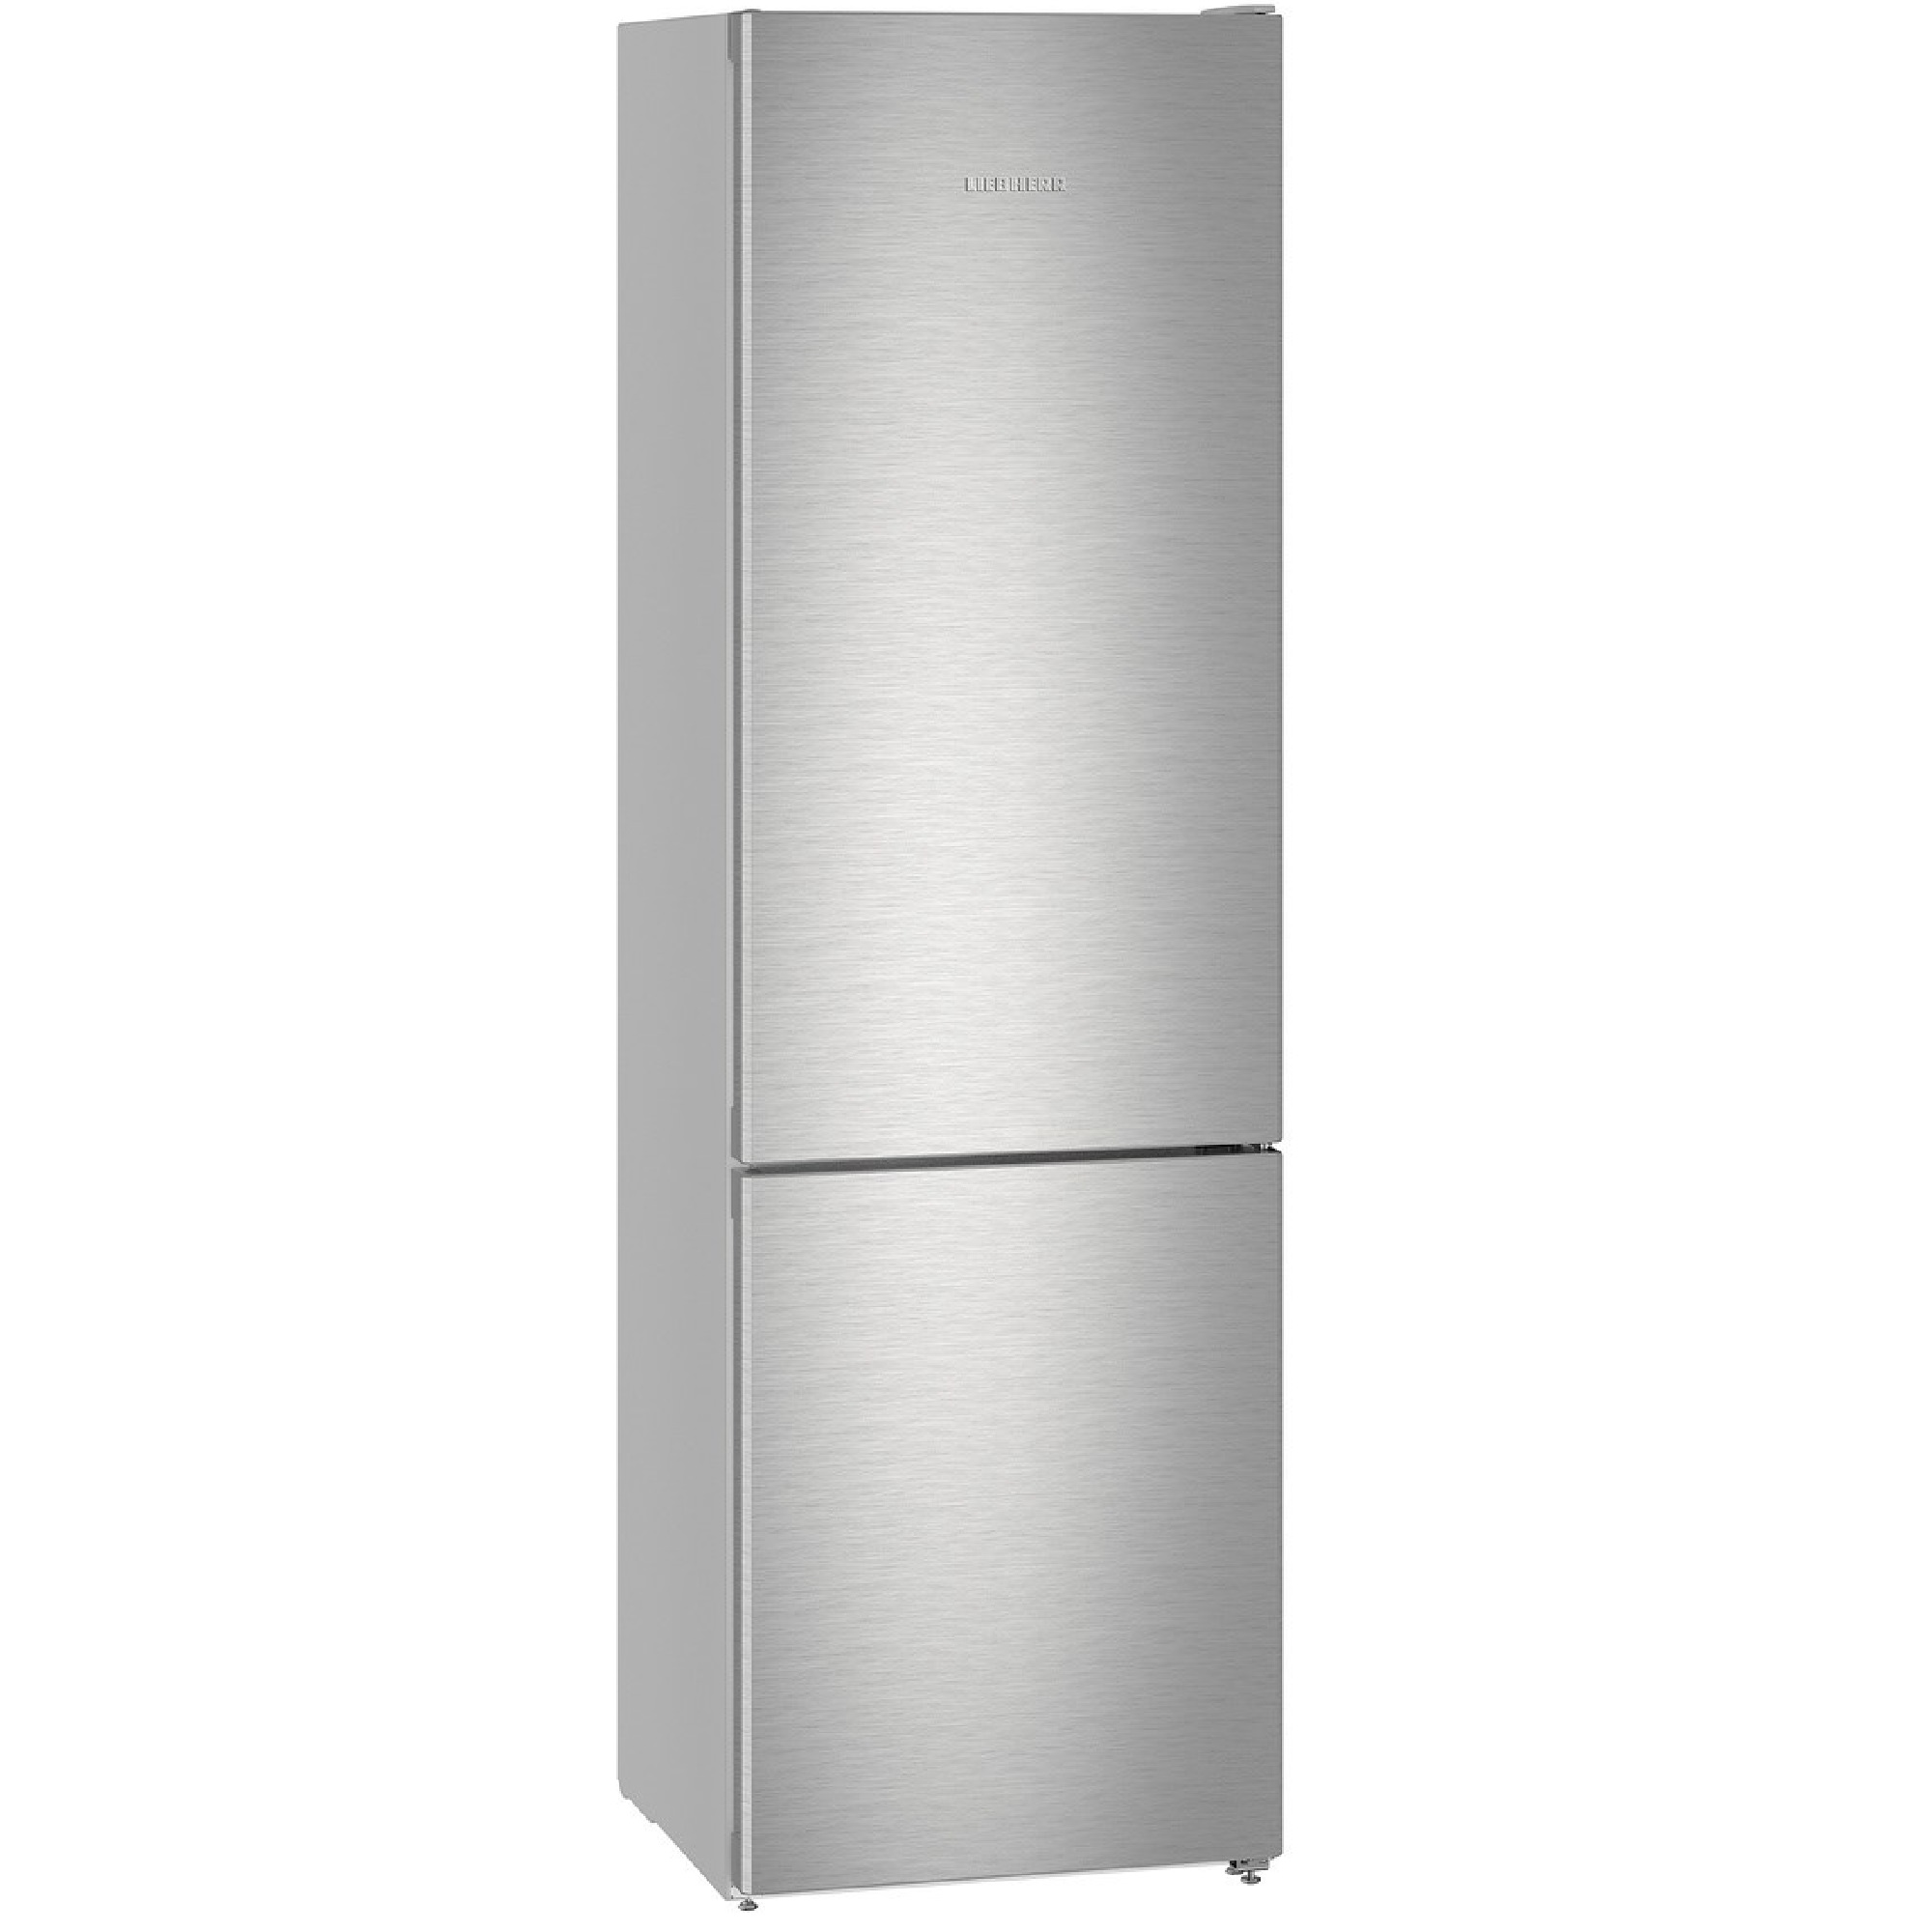 Купить холодильник с доставкой спб. Холодильник Liebherr cbnes5778. Холодильник Hisense RB-438n4fb1. Холодильник Liebherr CNEF 4735. Двухкамерный холодильник Liebherr CBNEF 4835-21.